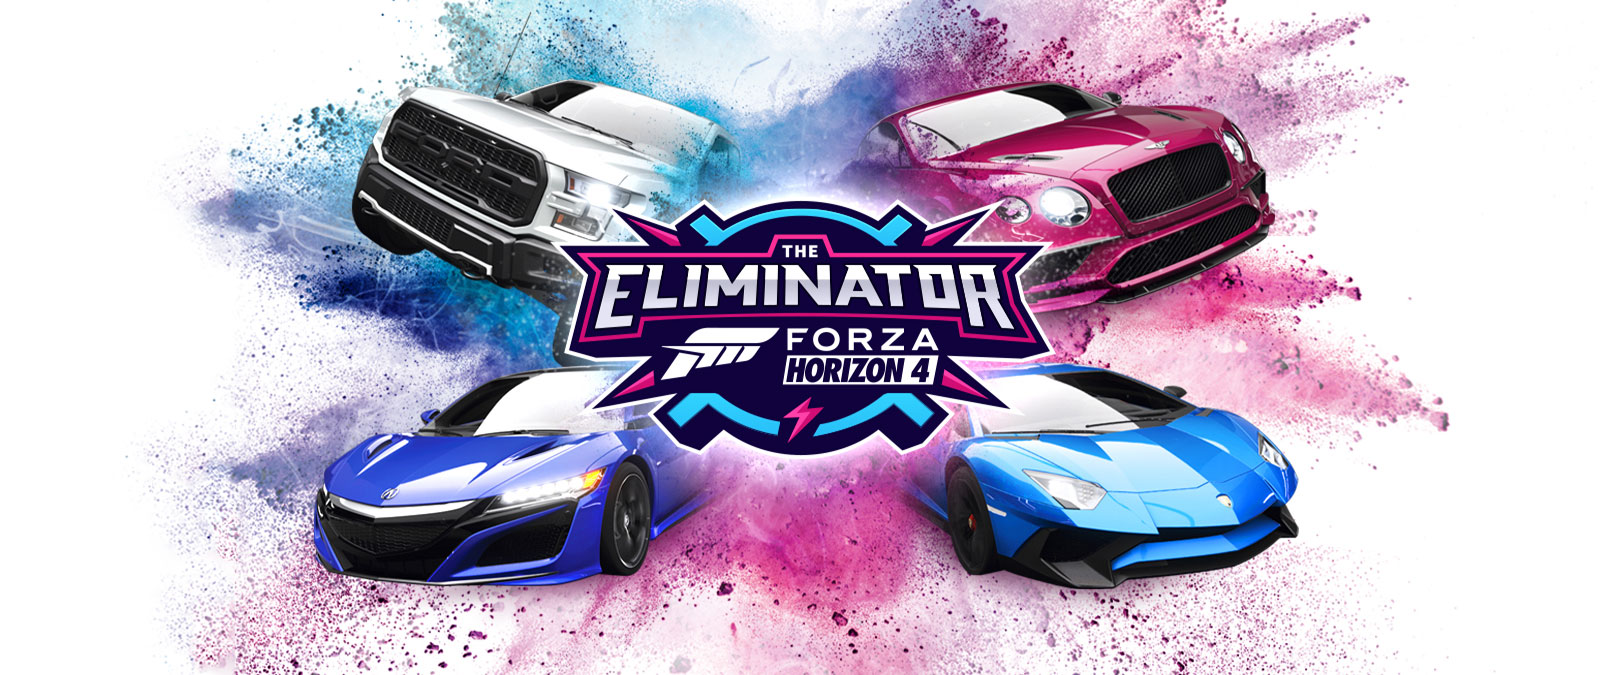 The Eliminator, Forza Horizon 4-logotypen, fyra bilar omgivna av blått och rosa pulver